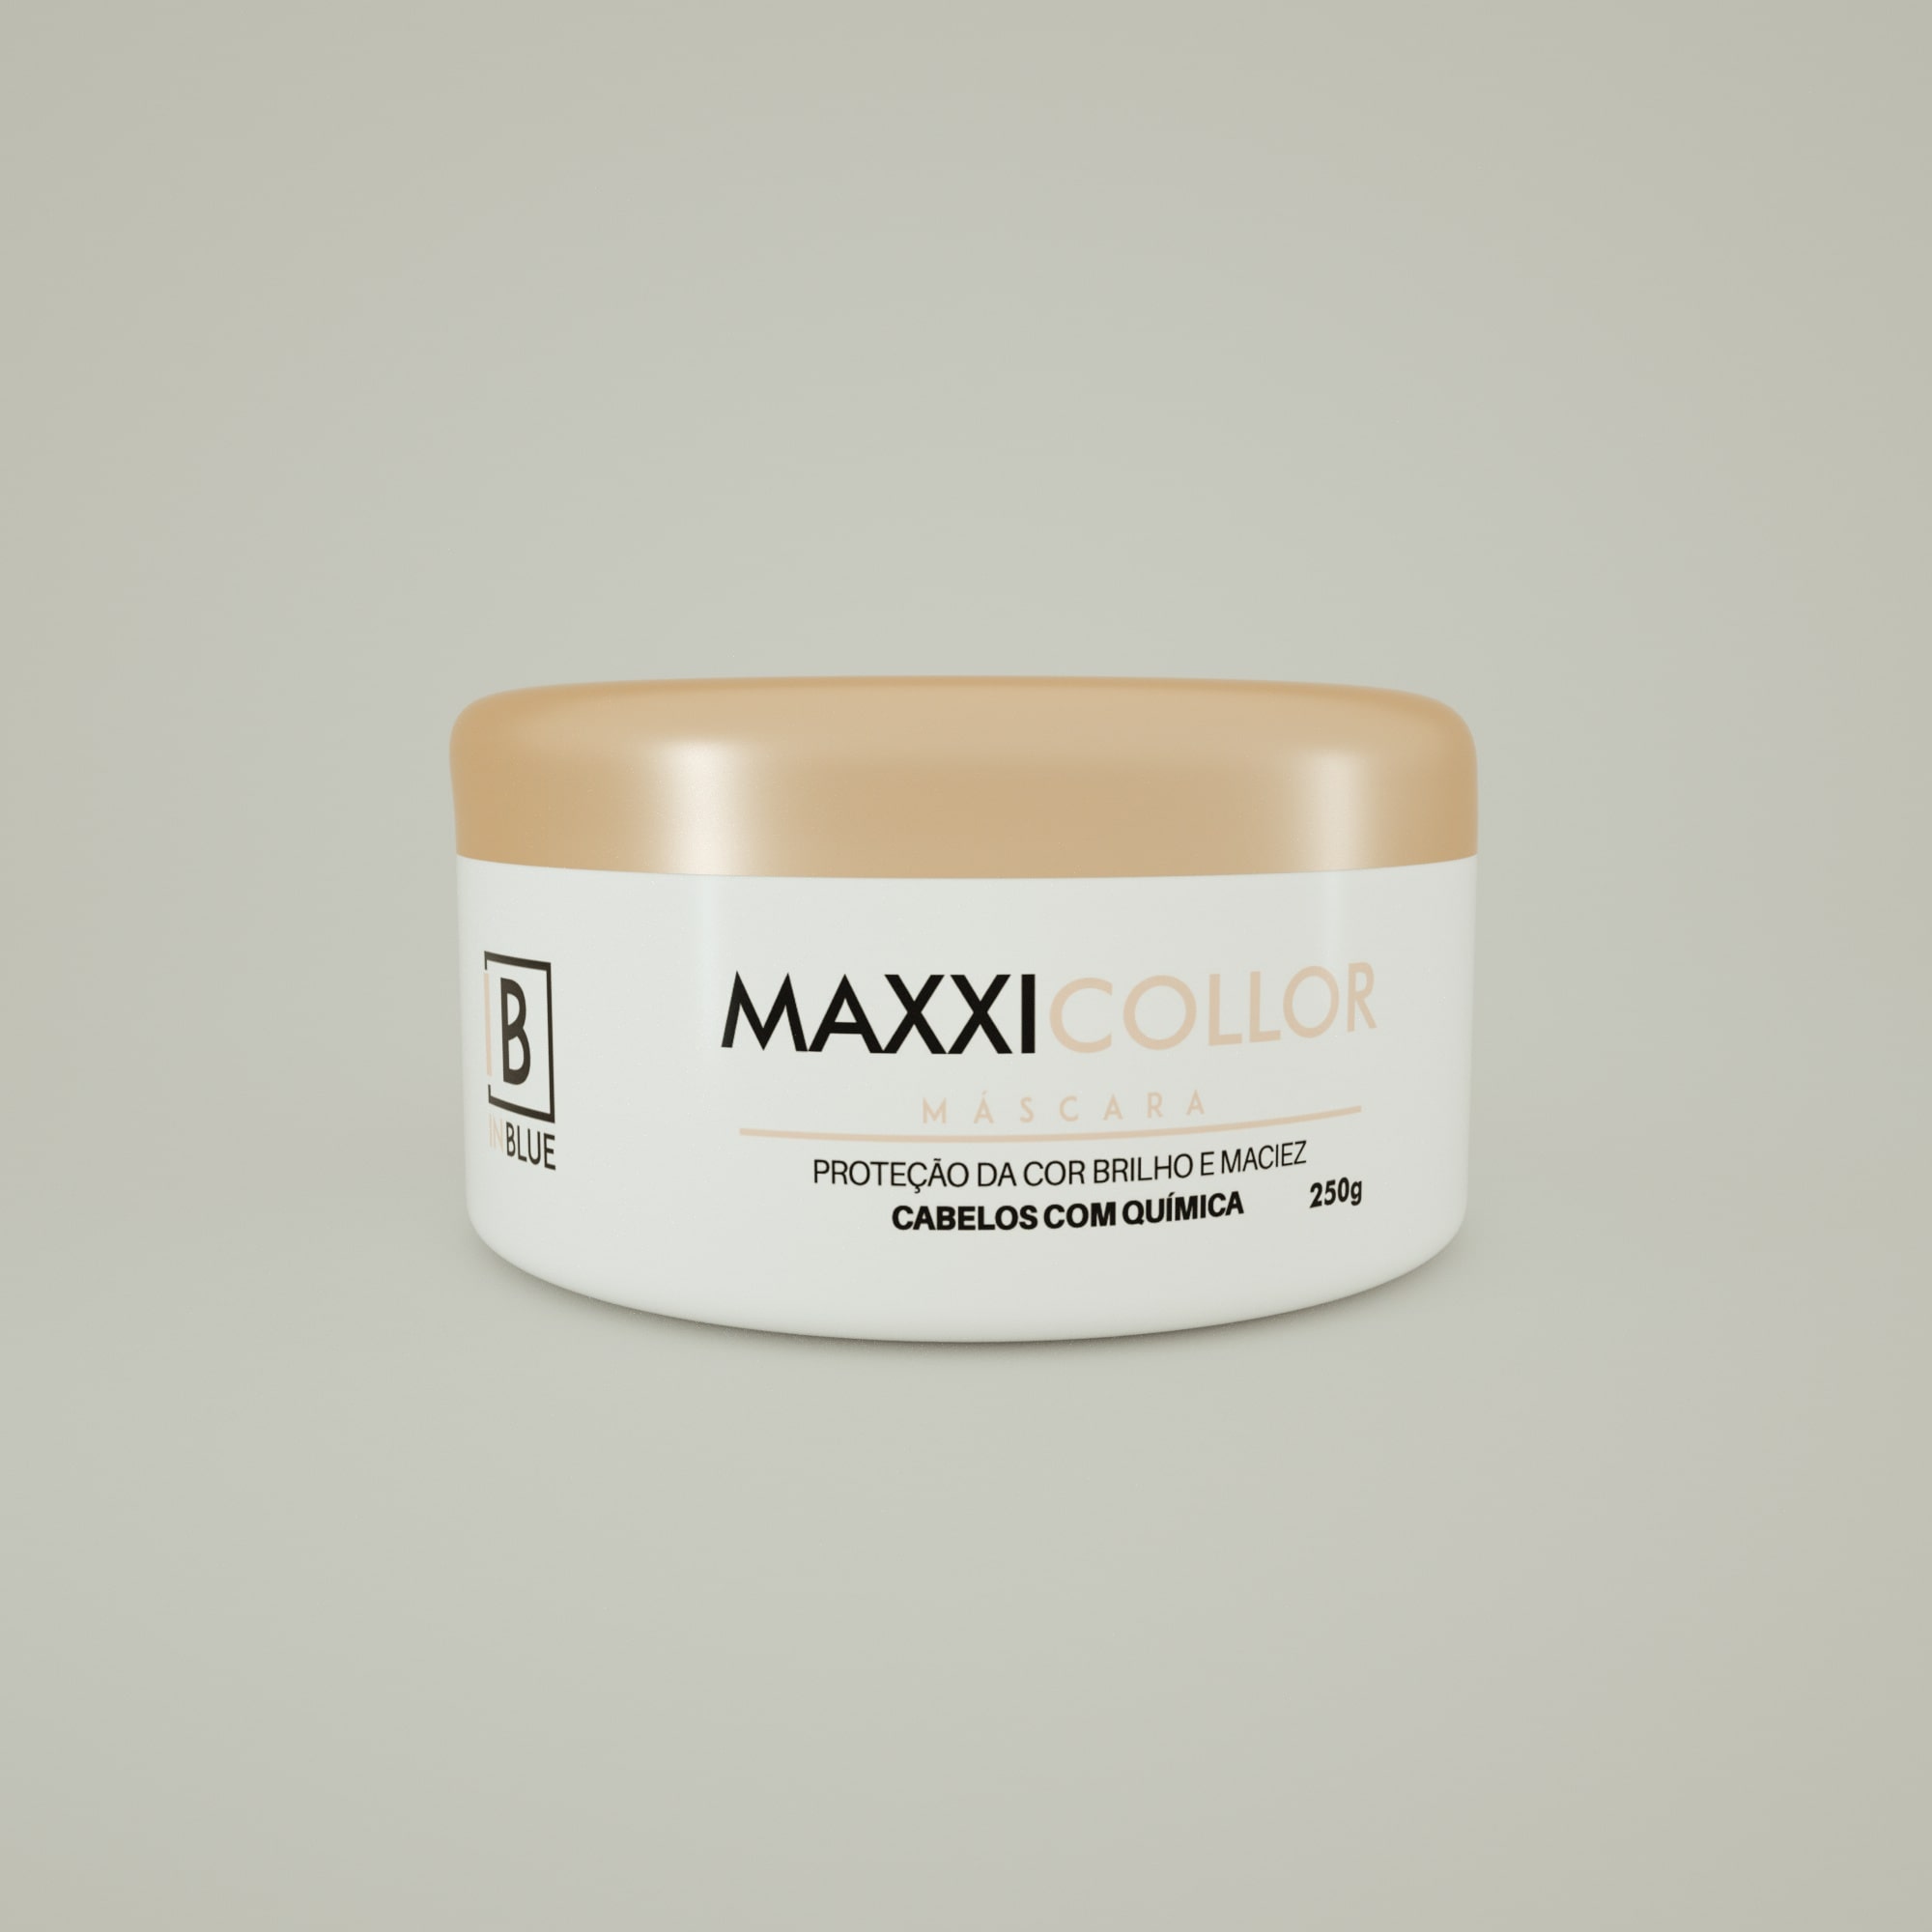 Máscara Maxxi Collor 250g | In Blue Professional